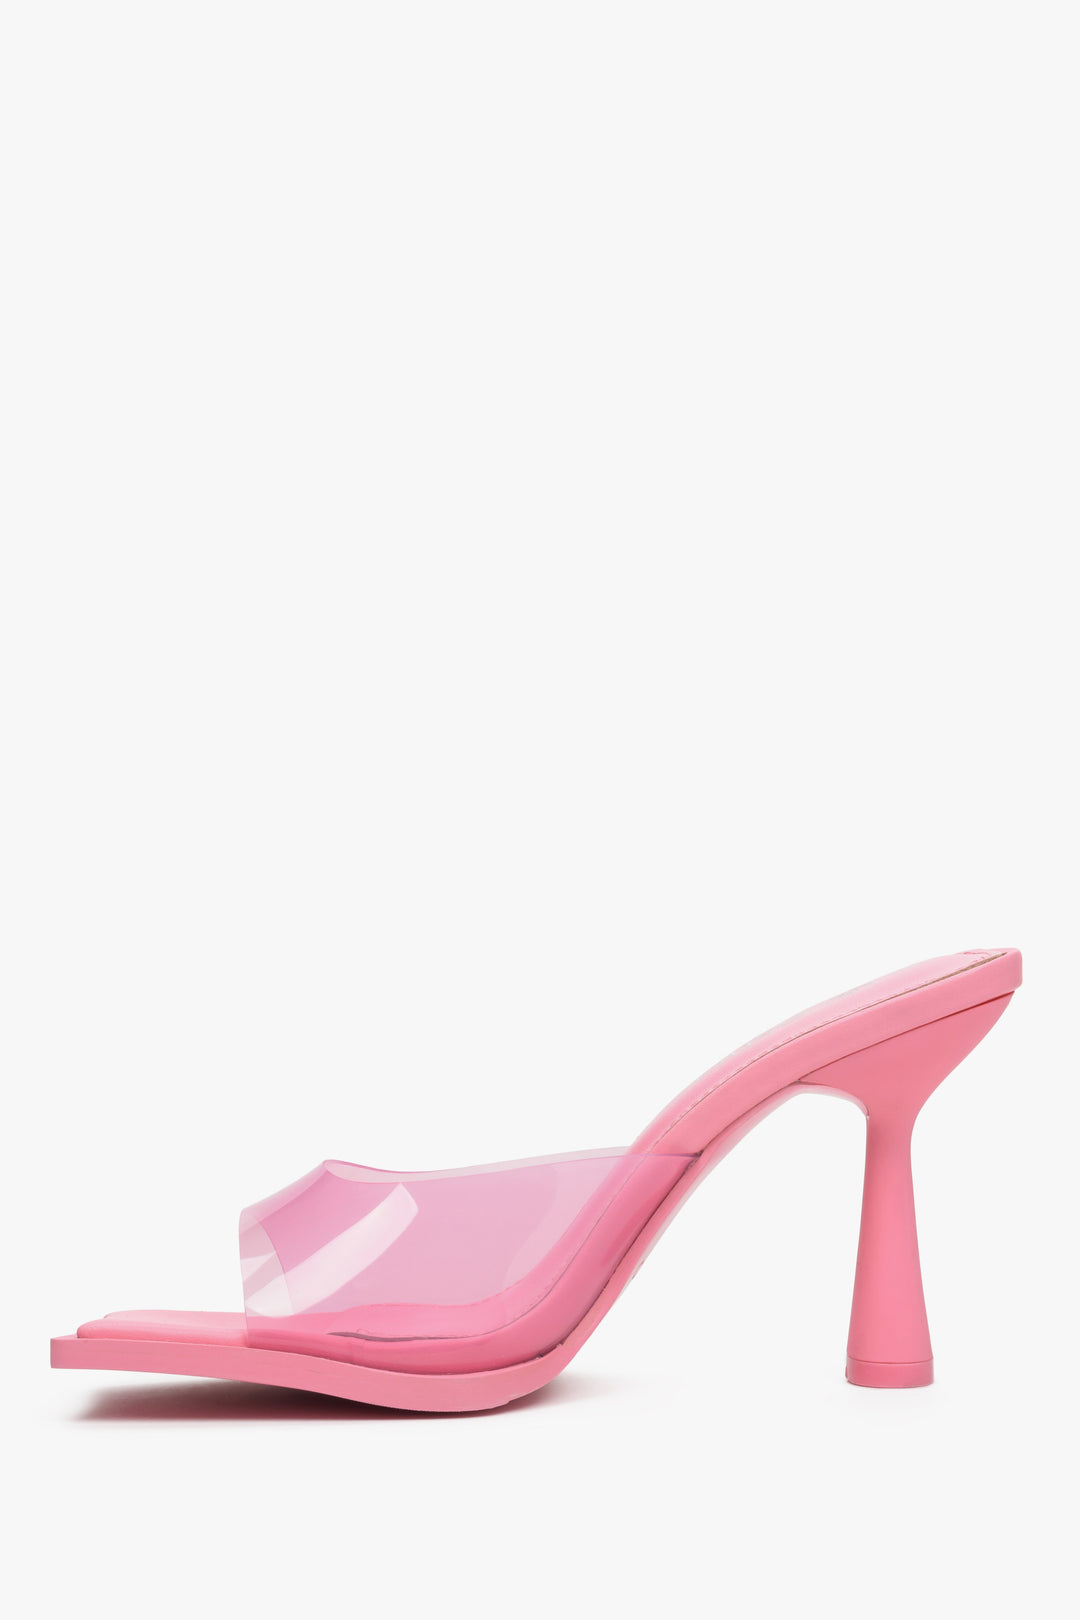 Estro women's slide sandals with a pink sole - shoe profile.